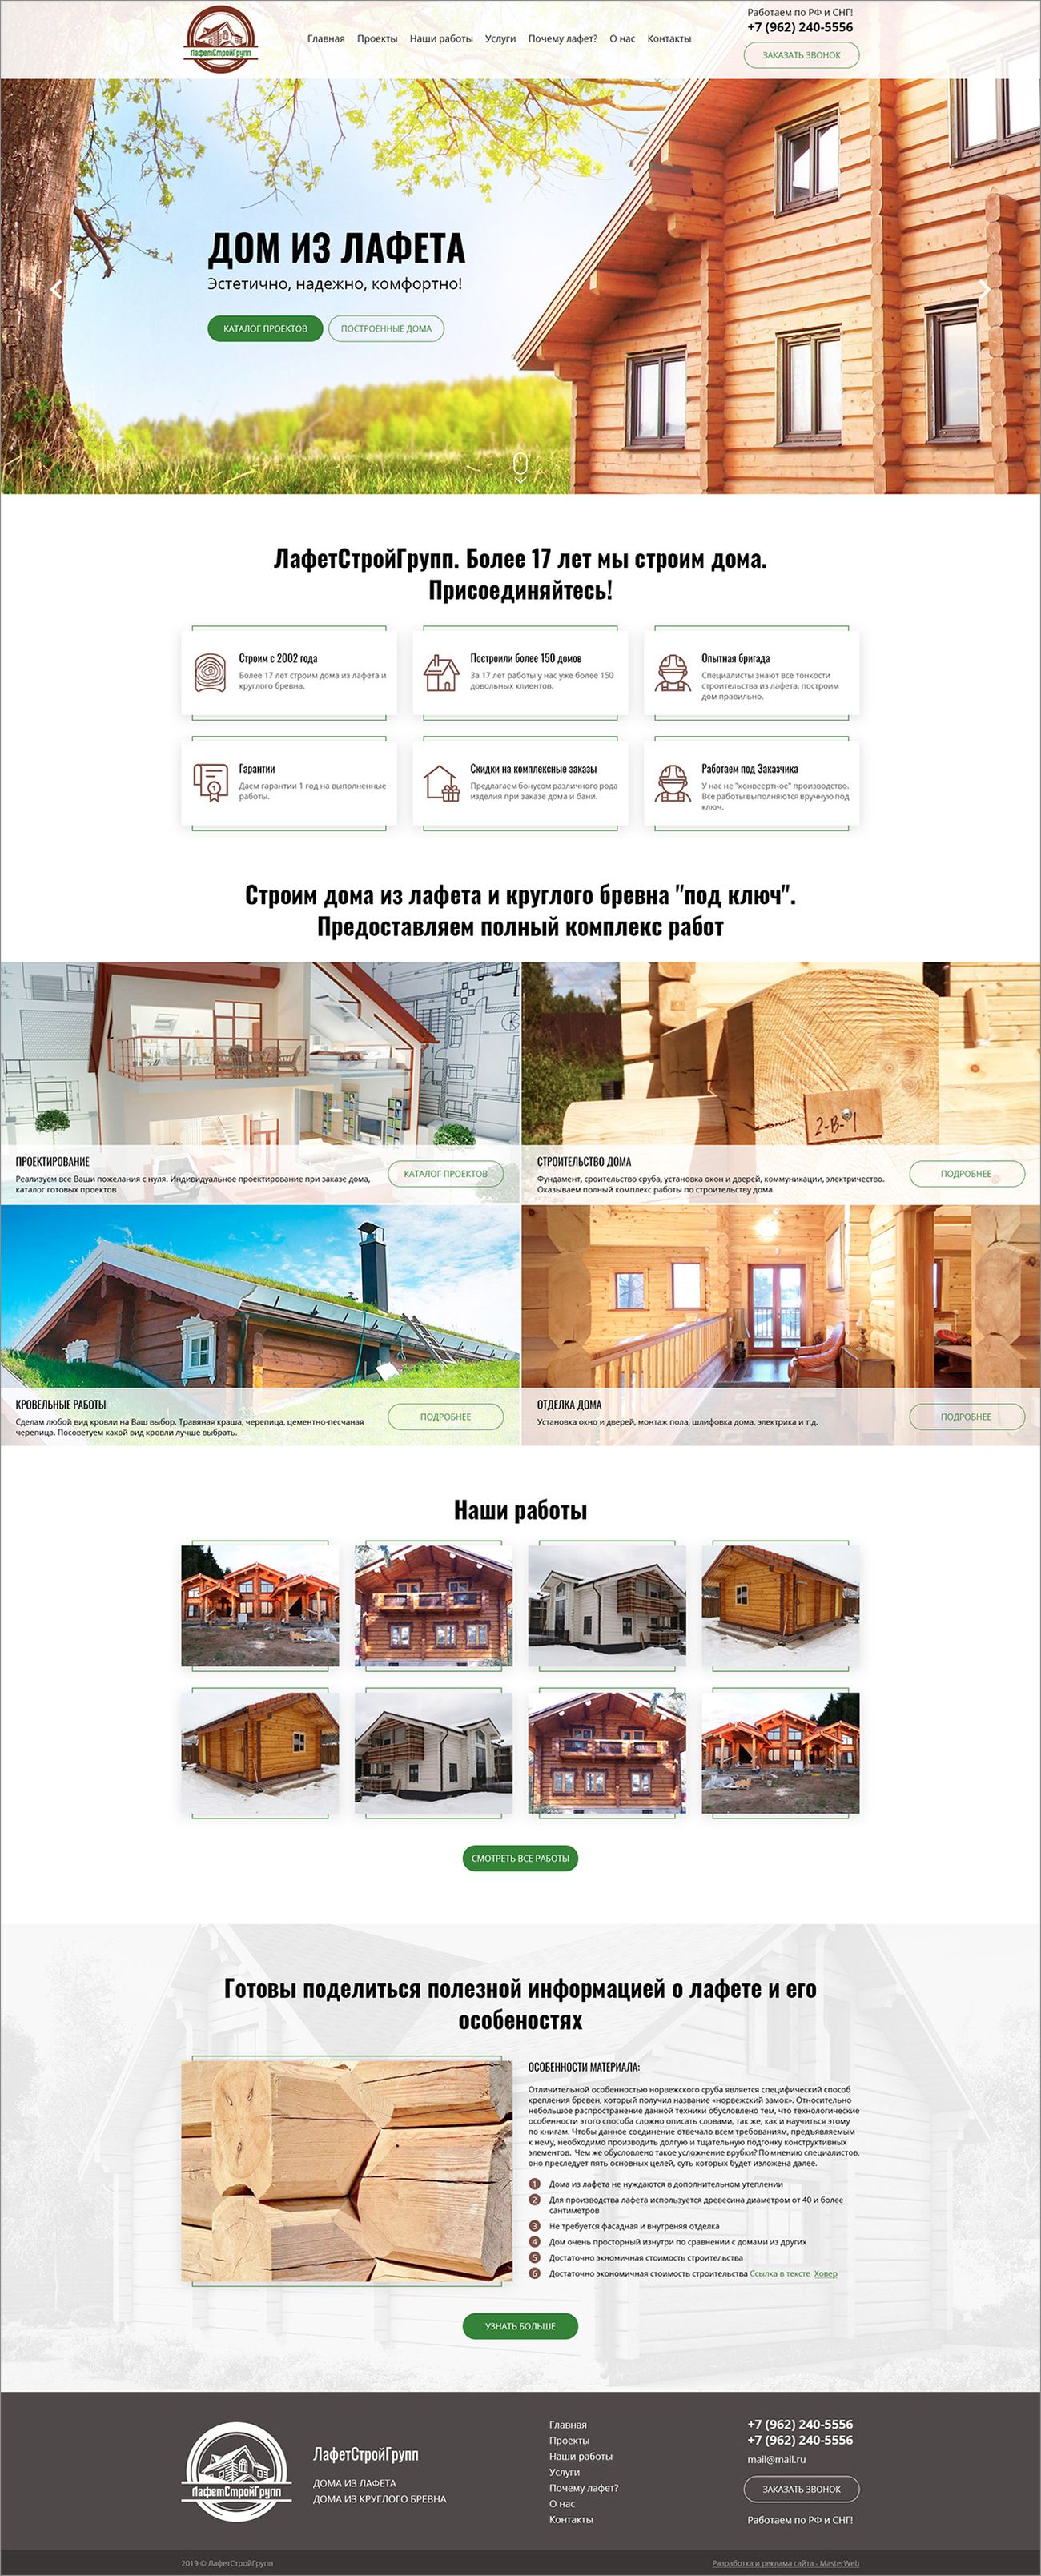 Разработка сайта по строительству домов из лафета — фото-560_2